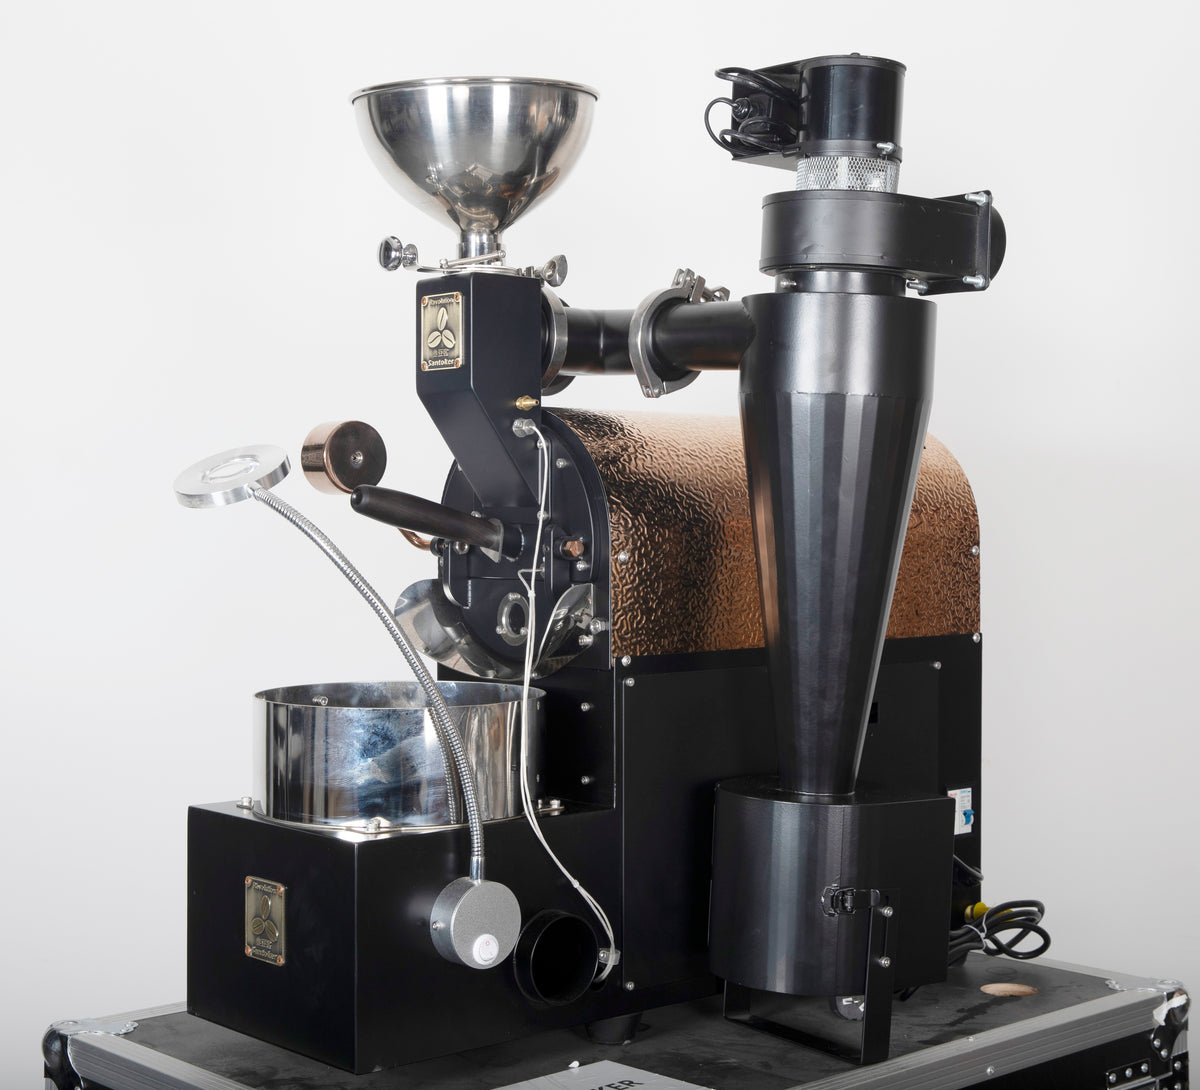 Santoker R500 咖啡烘焙机 - 700g/批